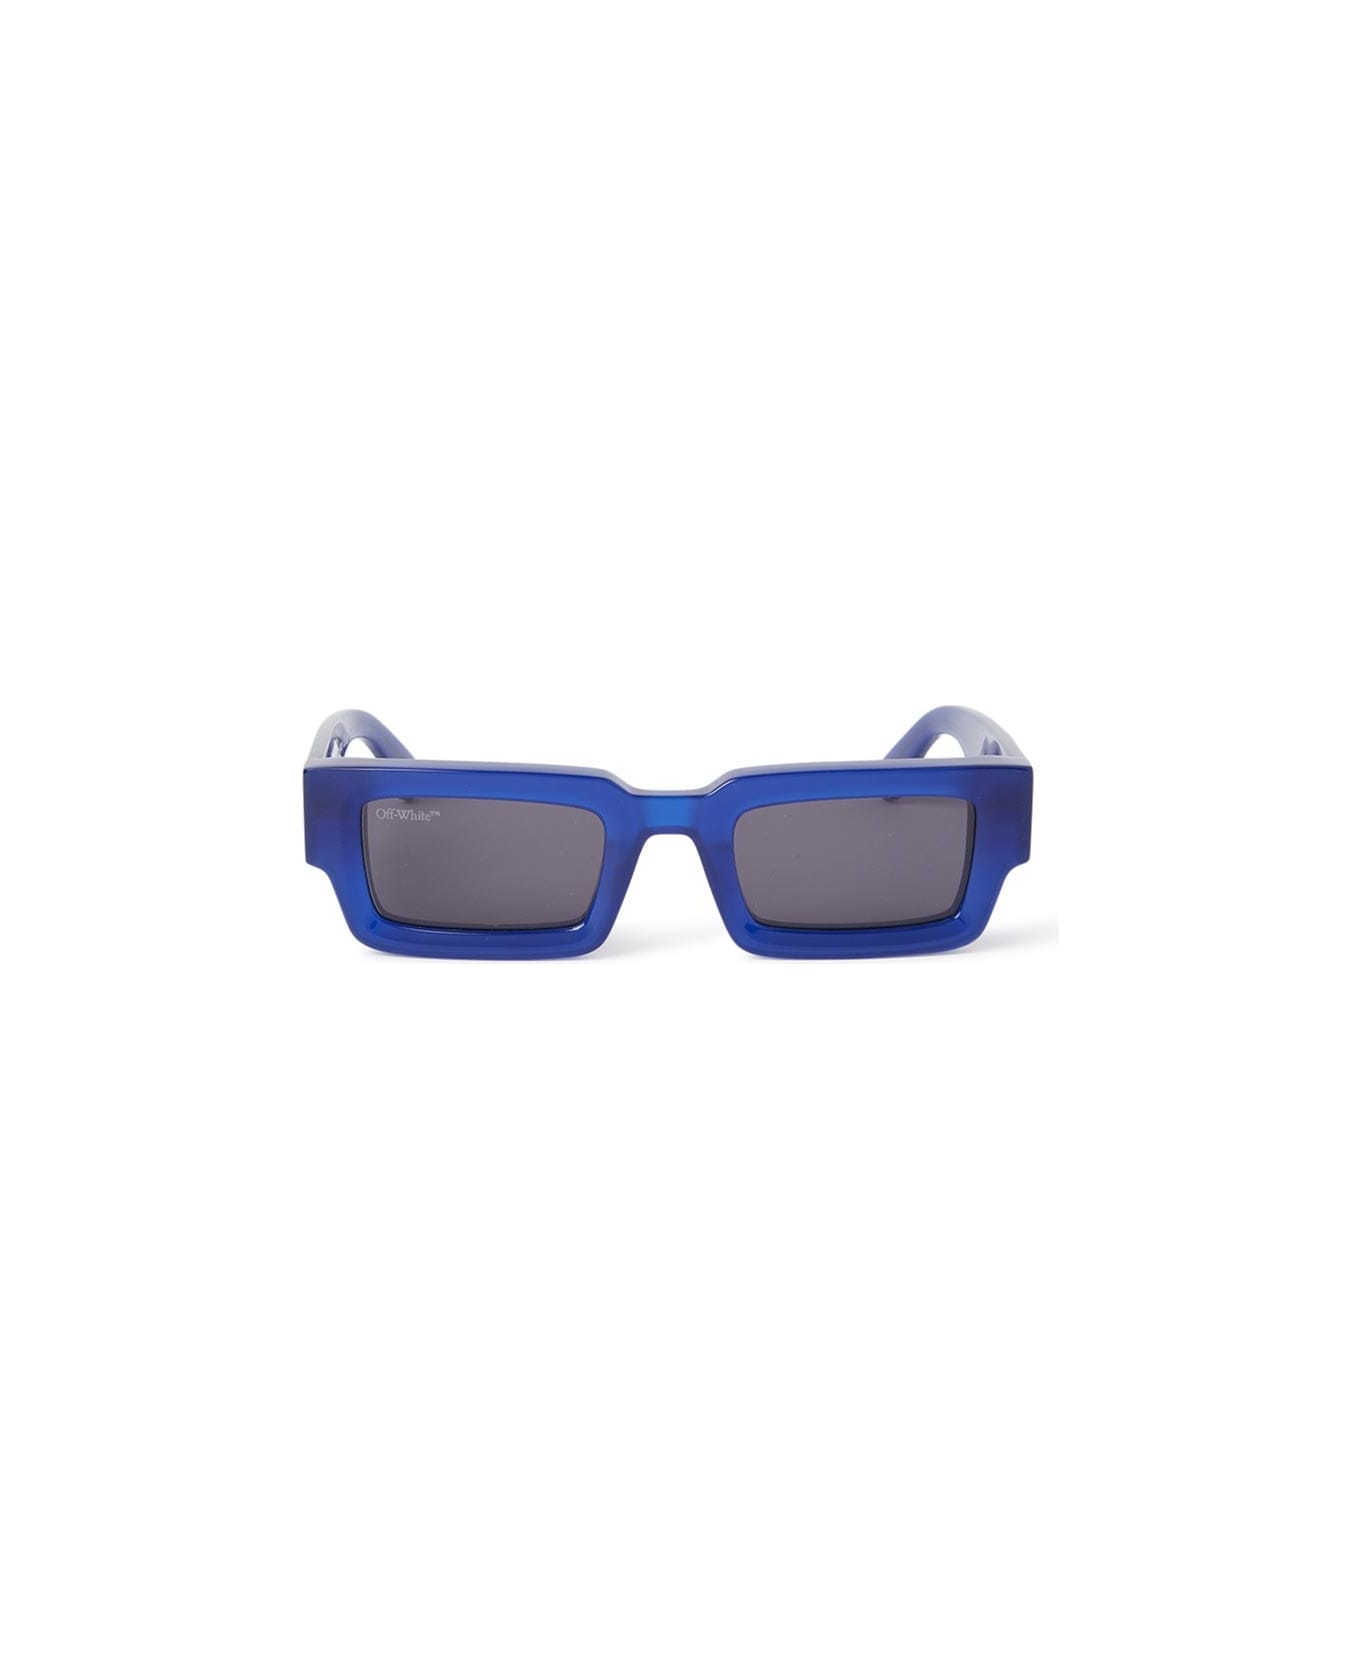 Off-White Lecce Sunglasses - Blu/Grigio